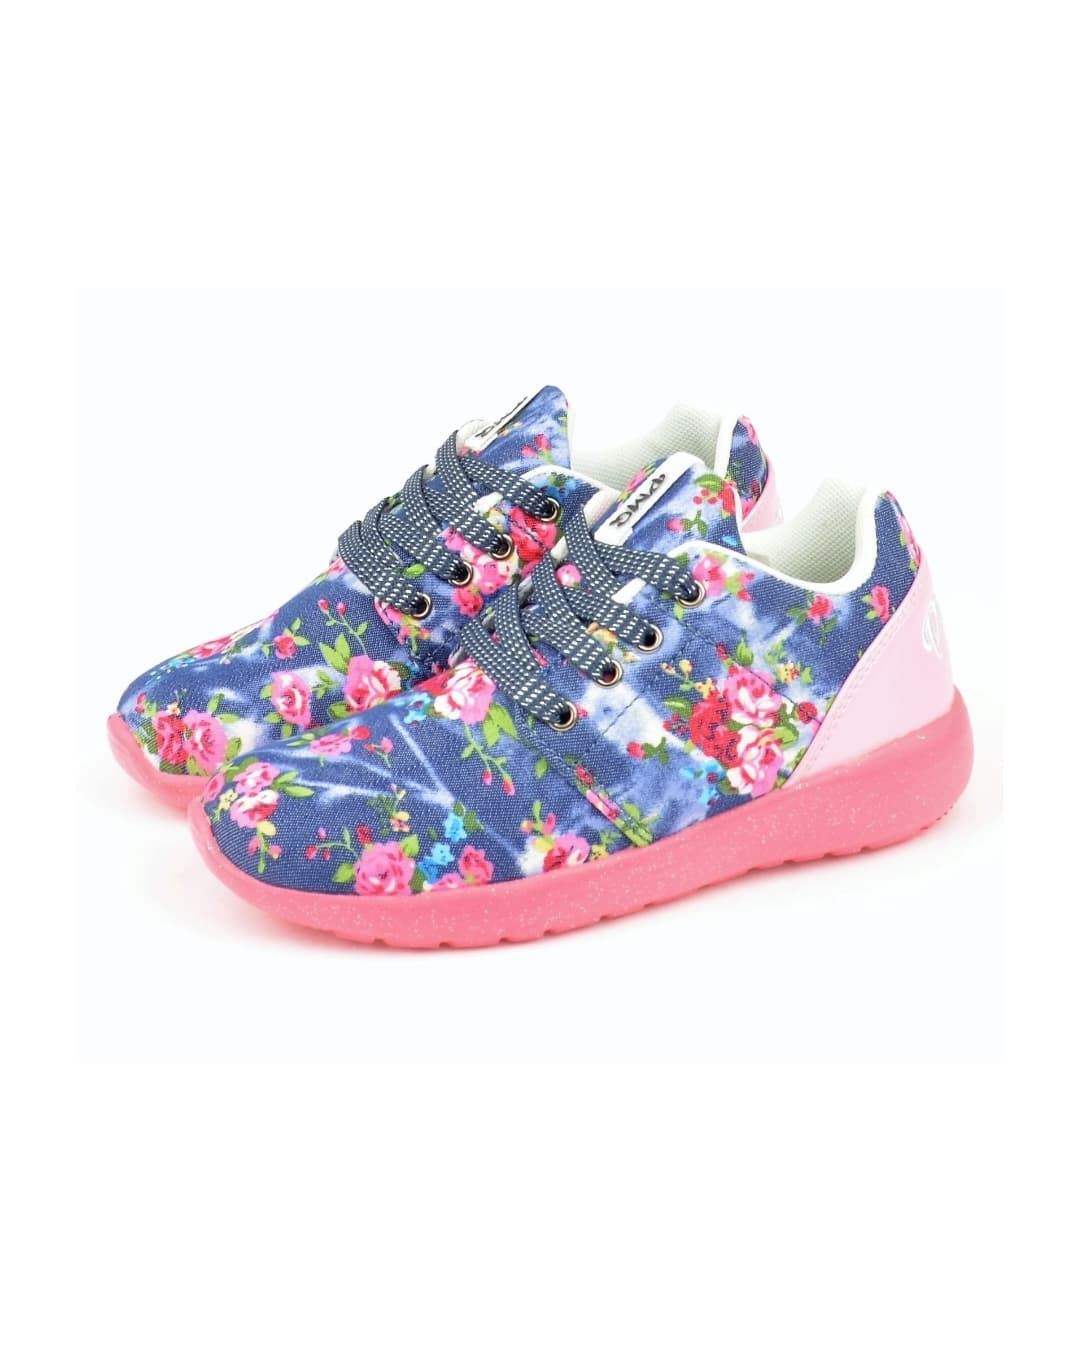 Herencia Subrayar Algún día Sneakers niña estampado floral Primigi de oferta Vigo / Nicolatienda